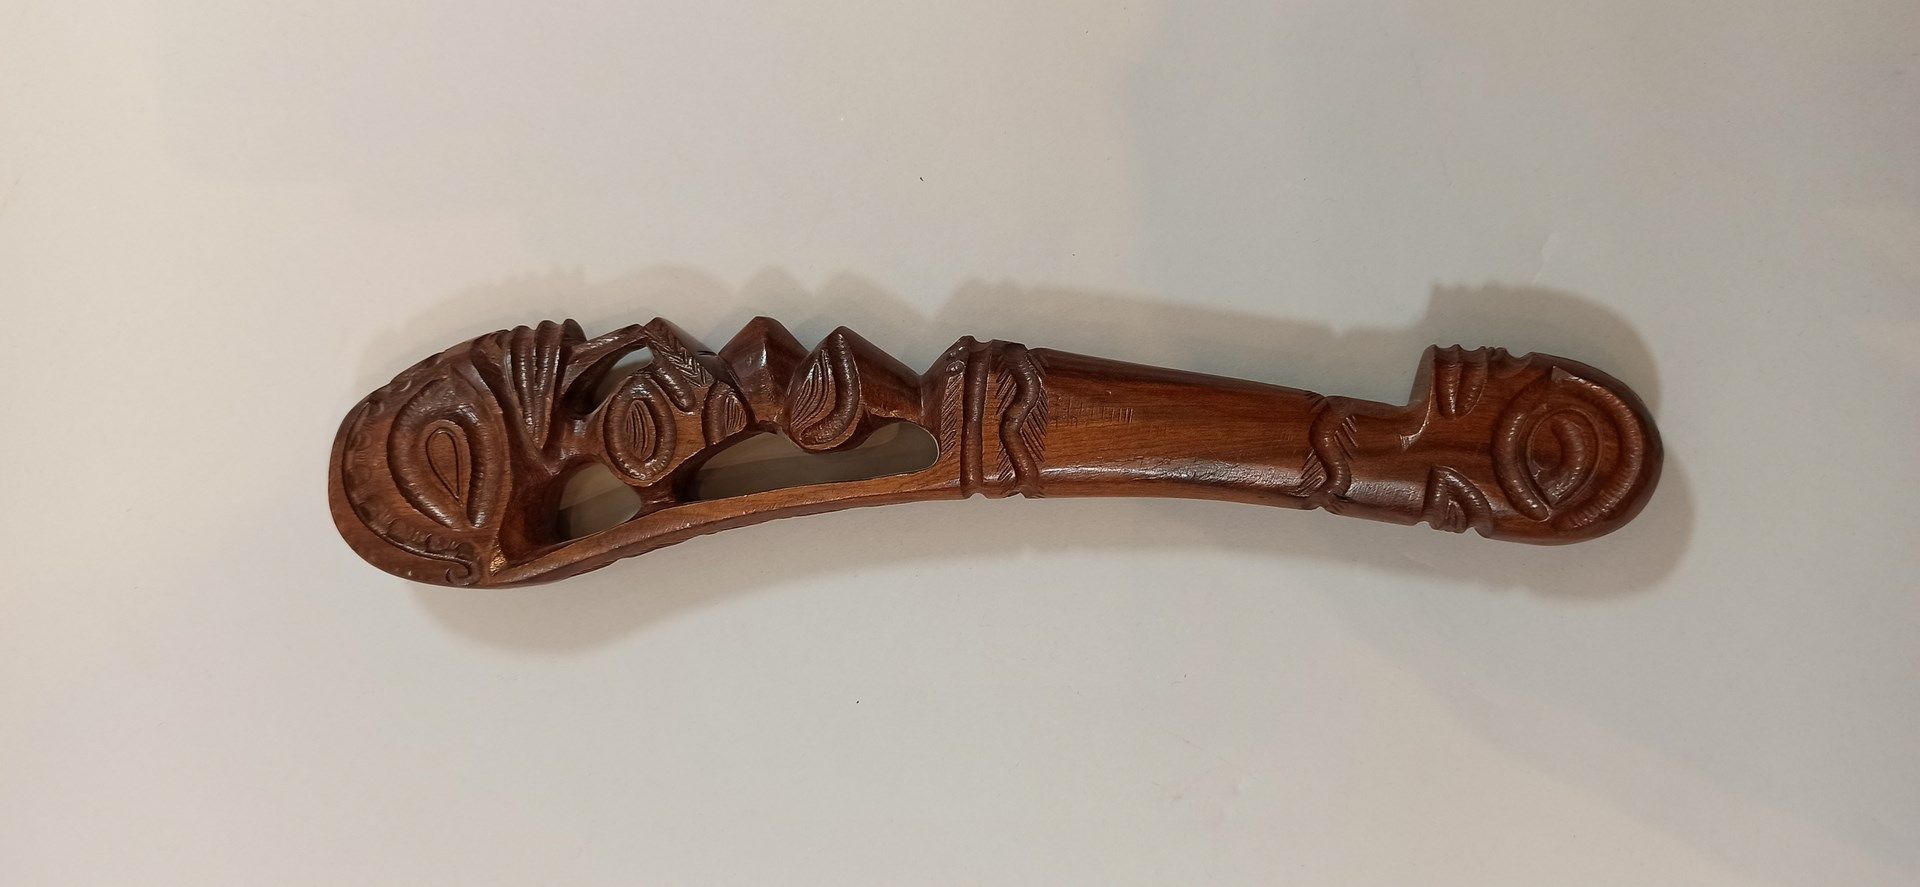 Null Los:

- Englischer Knüppel, getragen 

Länge: 27 cm

- Moderner Fidschi-Sta&hellip;